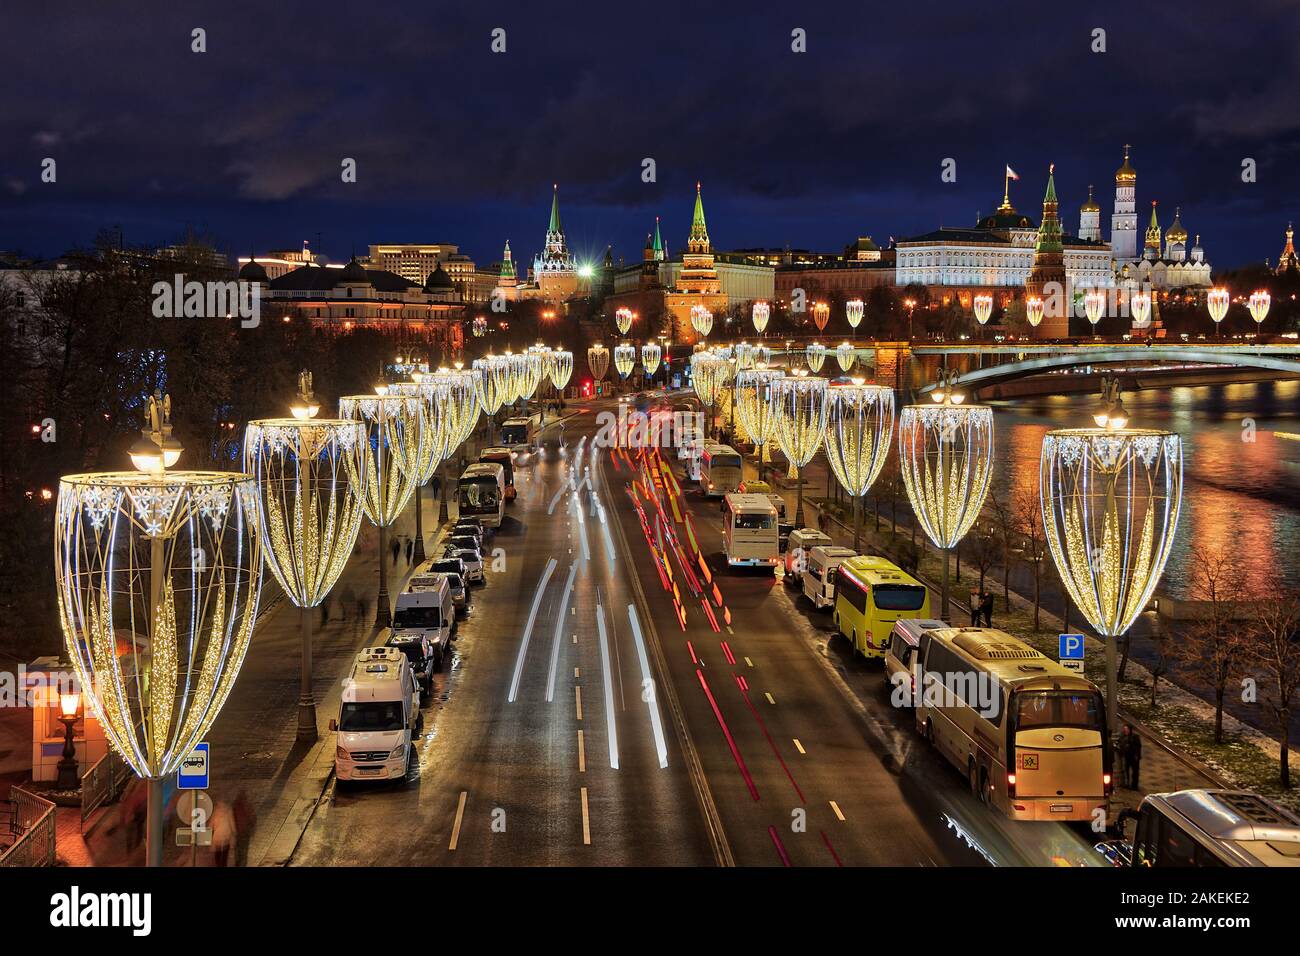 = Neues Jahr Lichter von Prechistenskaya Damm in der Dämmerung = Neues Jahr und Weihnachten Straßenbeleuchtung in Form von Gläser Champagner und Verkehr li Stockfoto